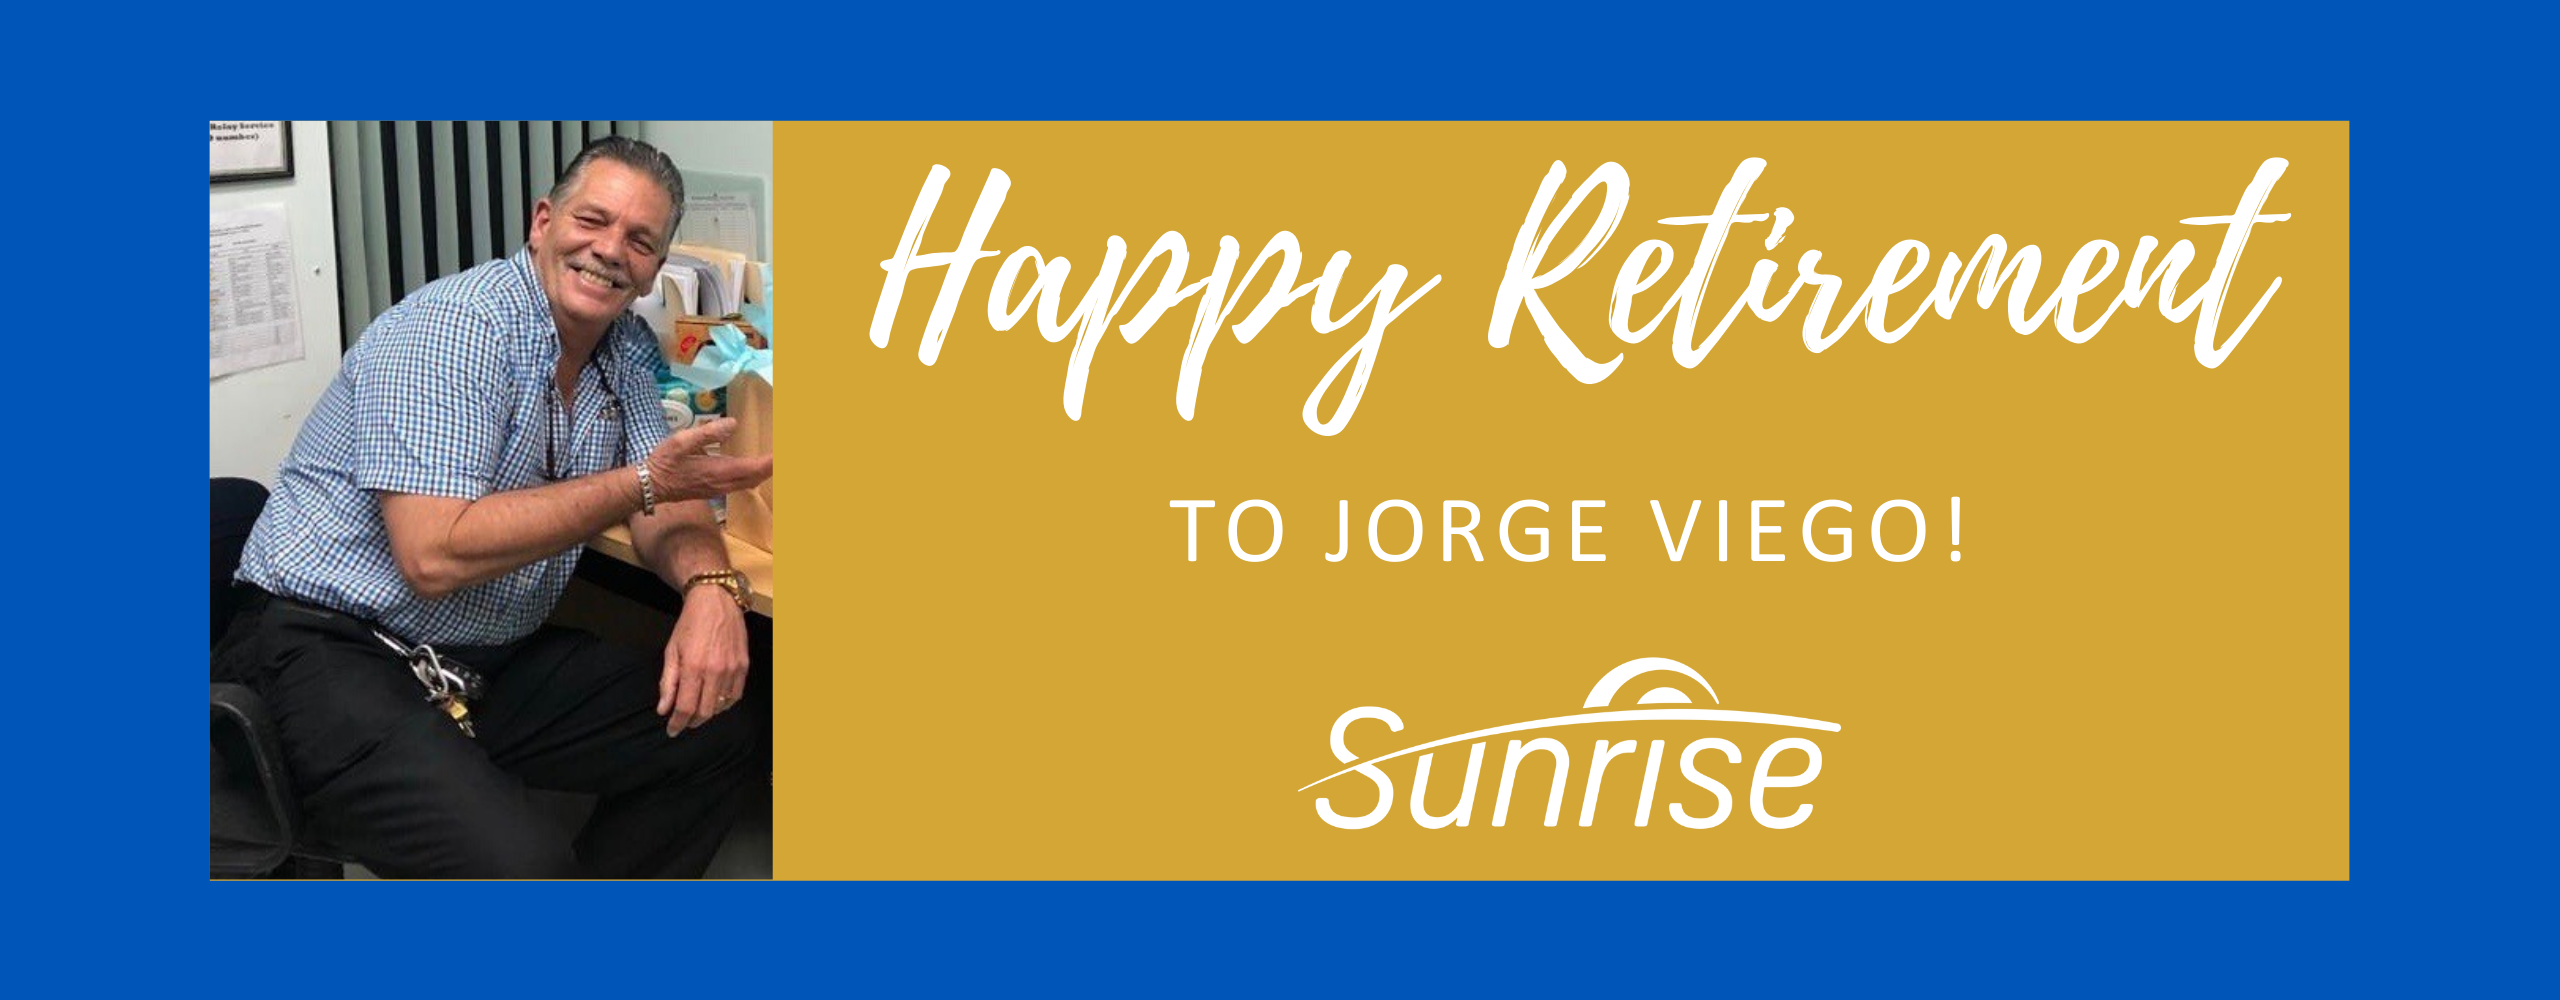 Bonne retraite, Jorge!